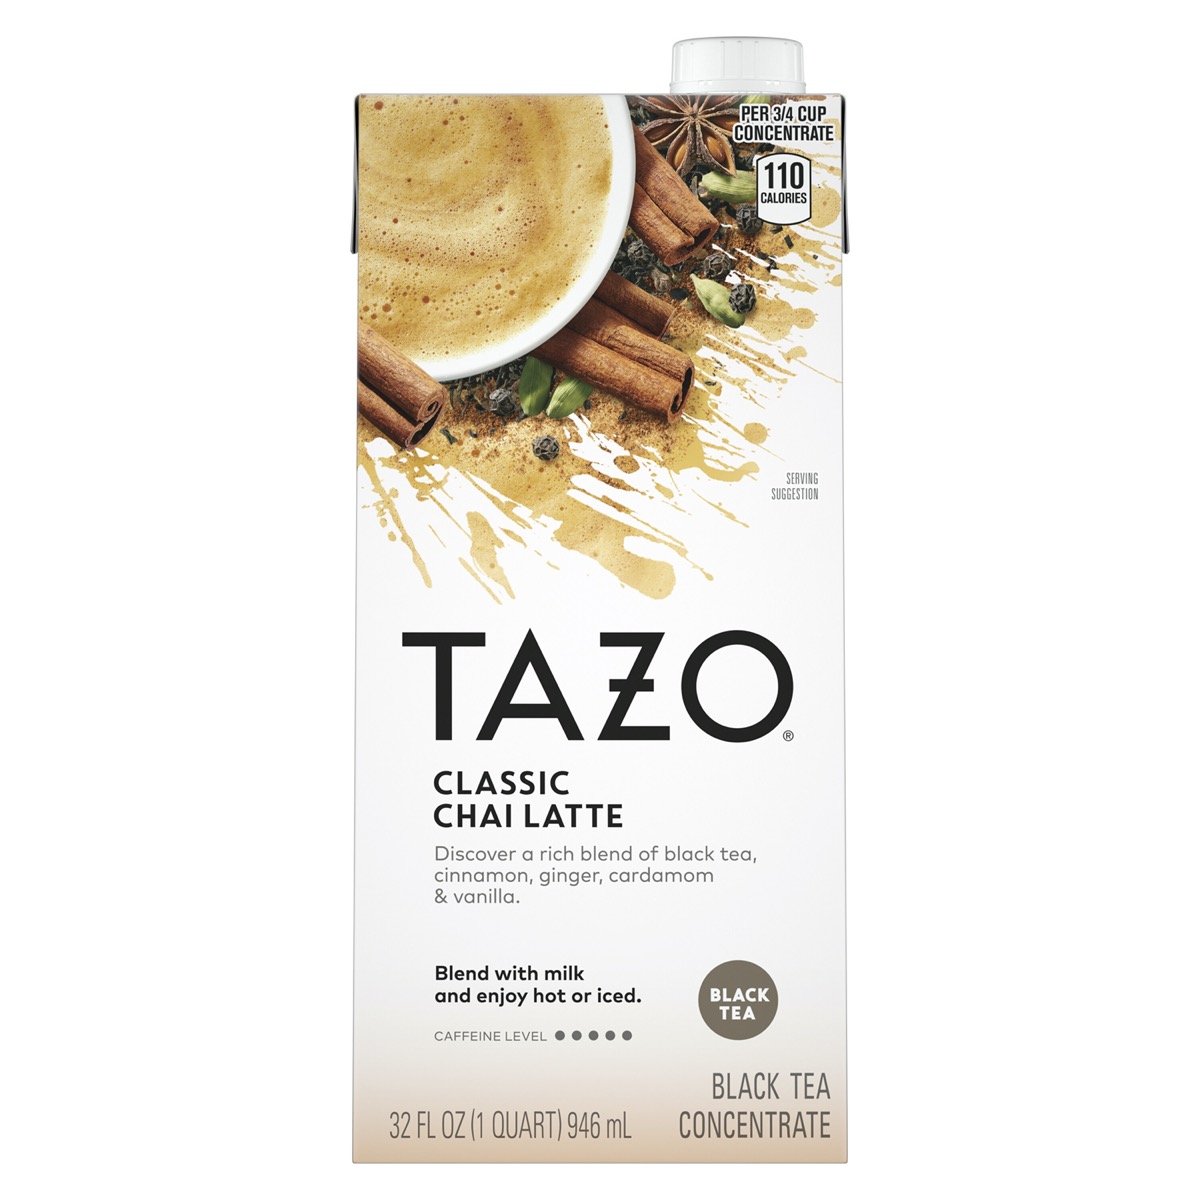 Tazo Chai Latte Tea Concentrate